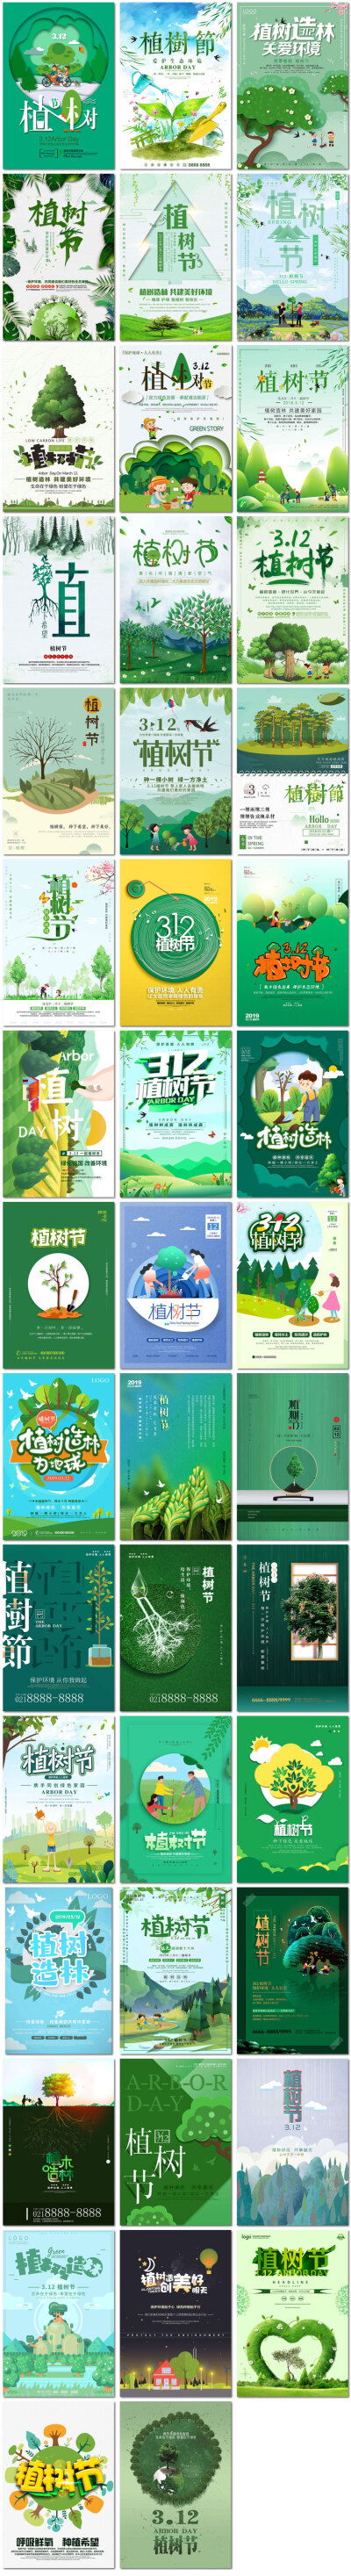 312植树节植树造林绿色环保宣传配图公益插画海报psd模板素材设计